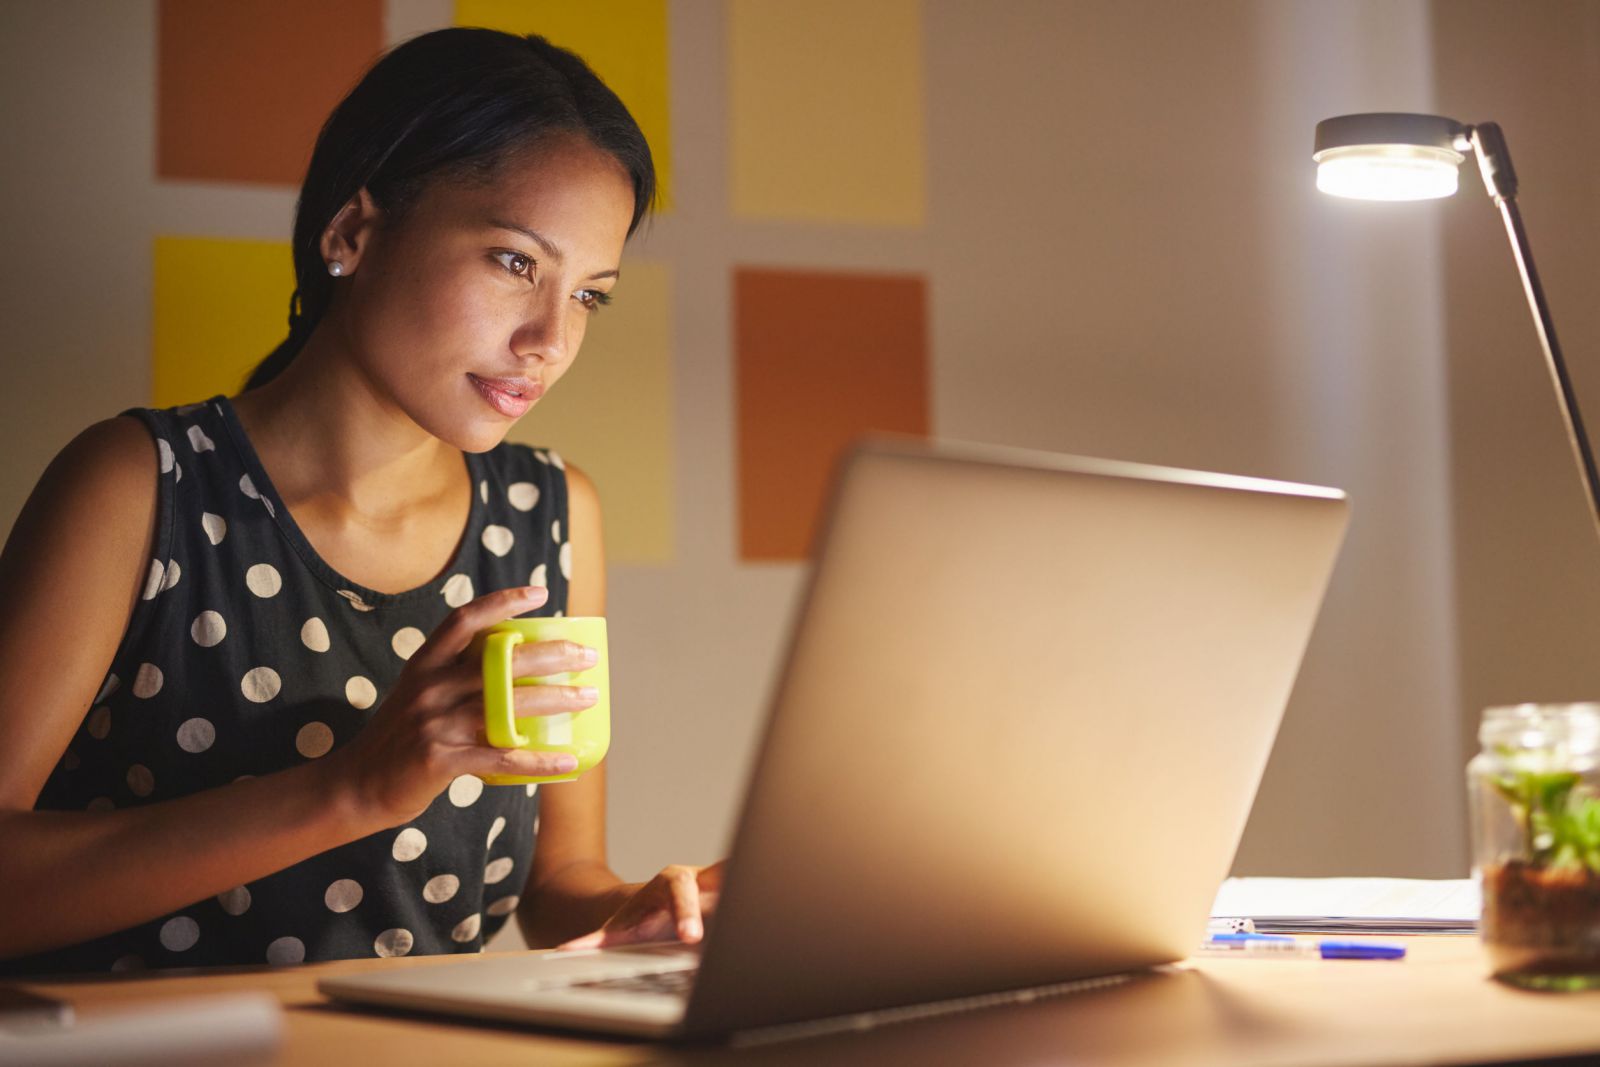 Mulher trabalhando em frente a um computador, enquanto segura uma xícara.